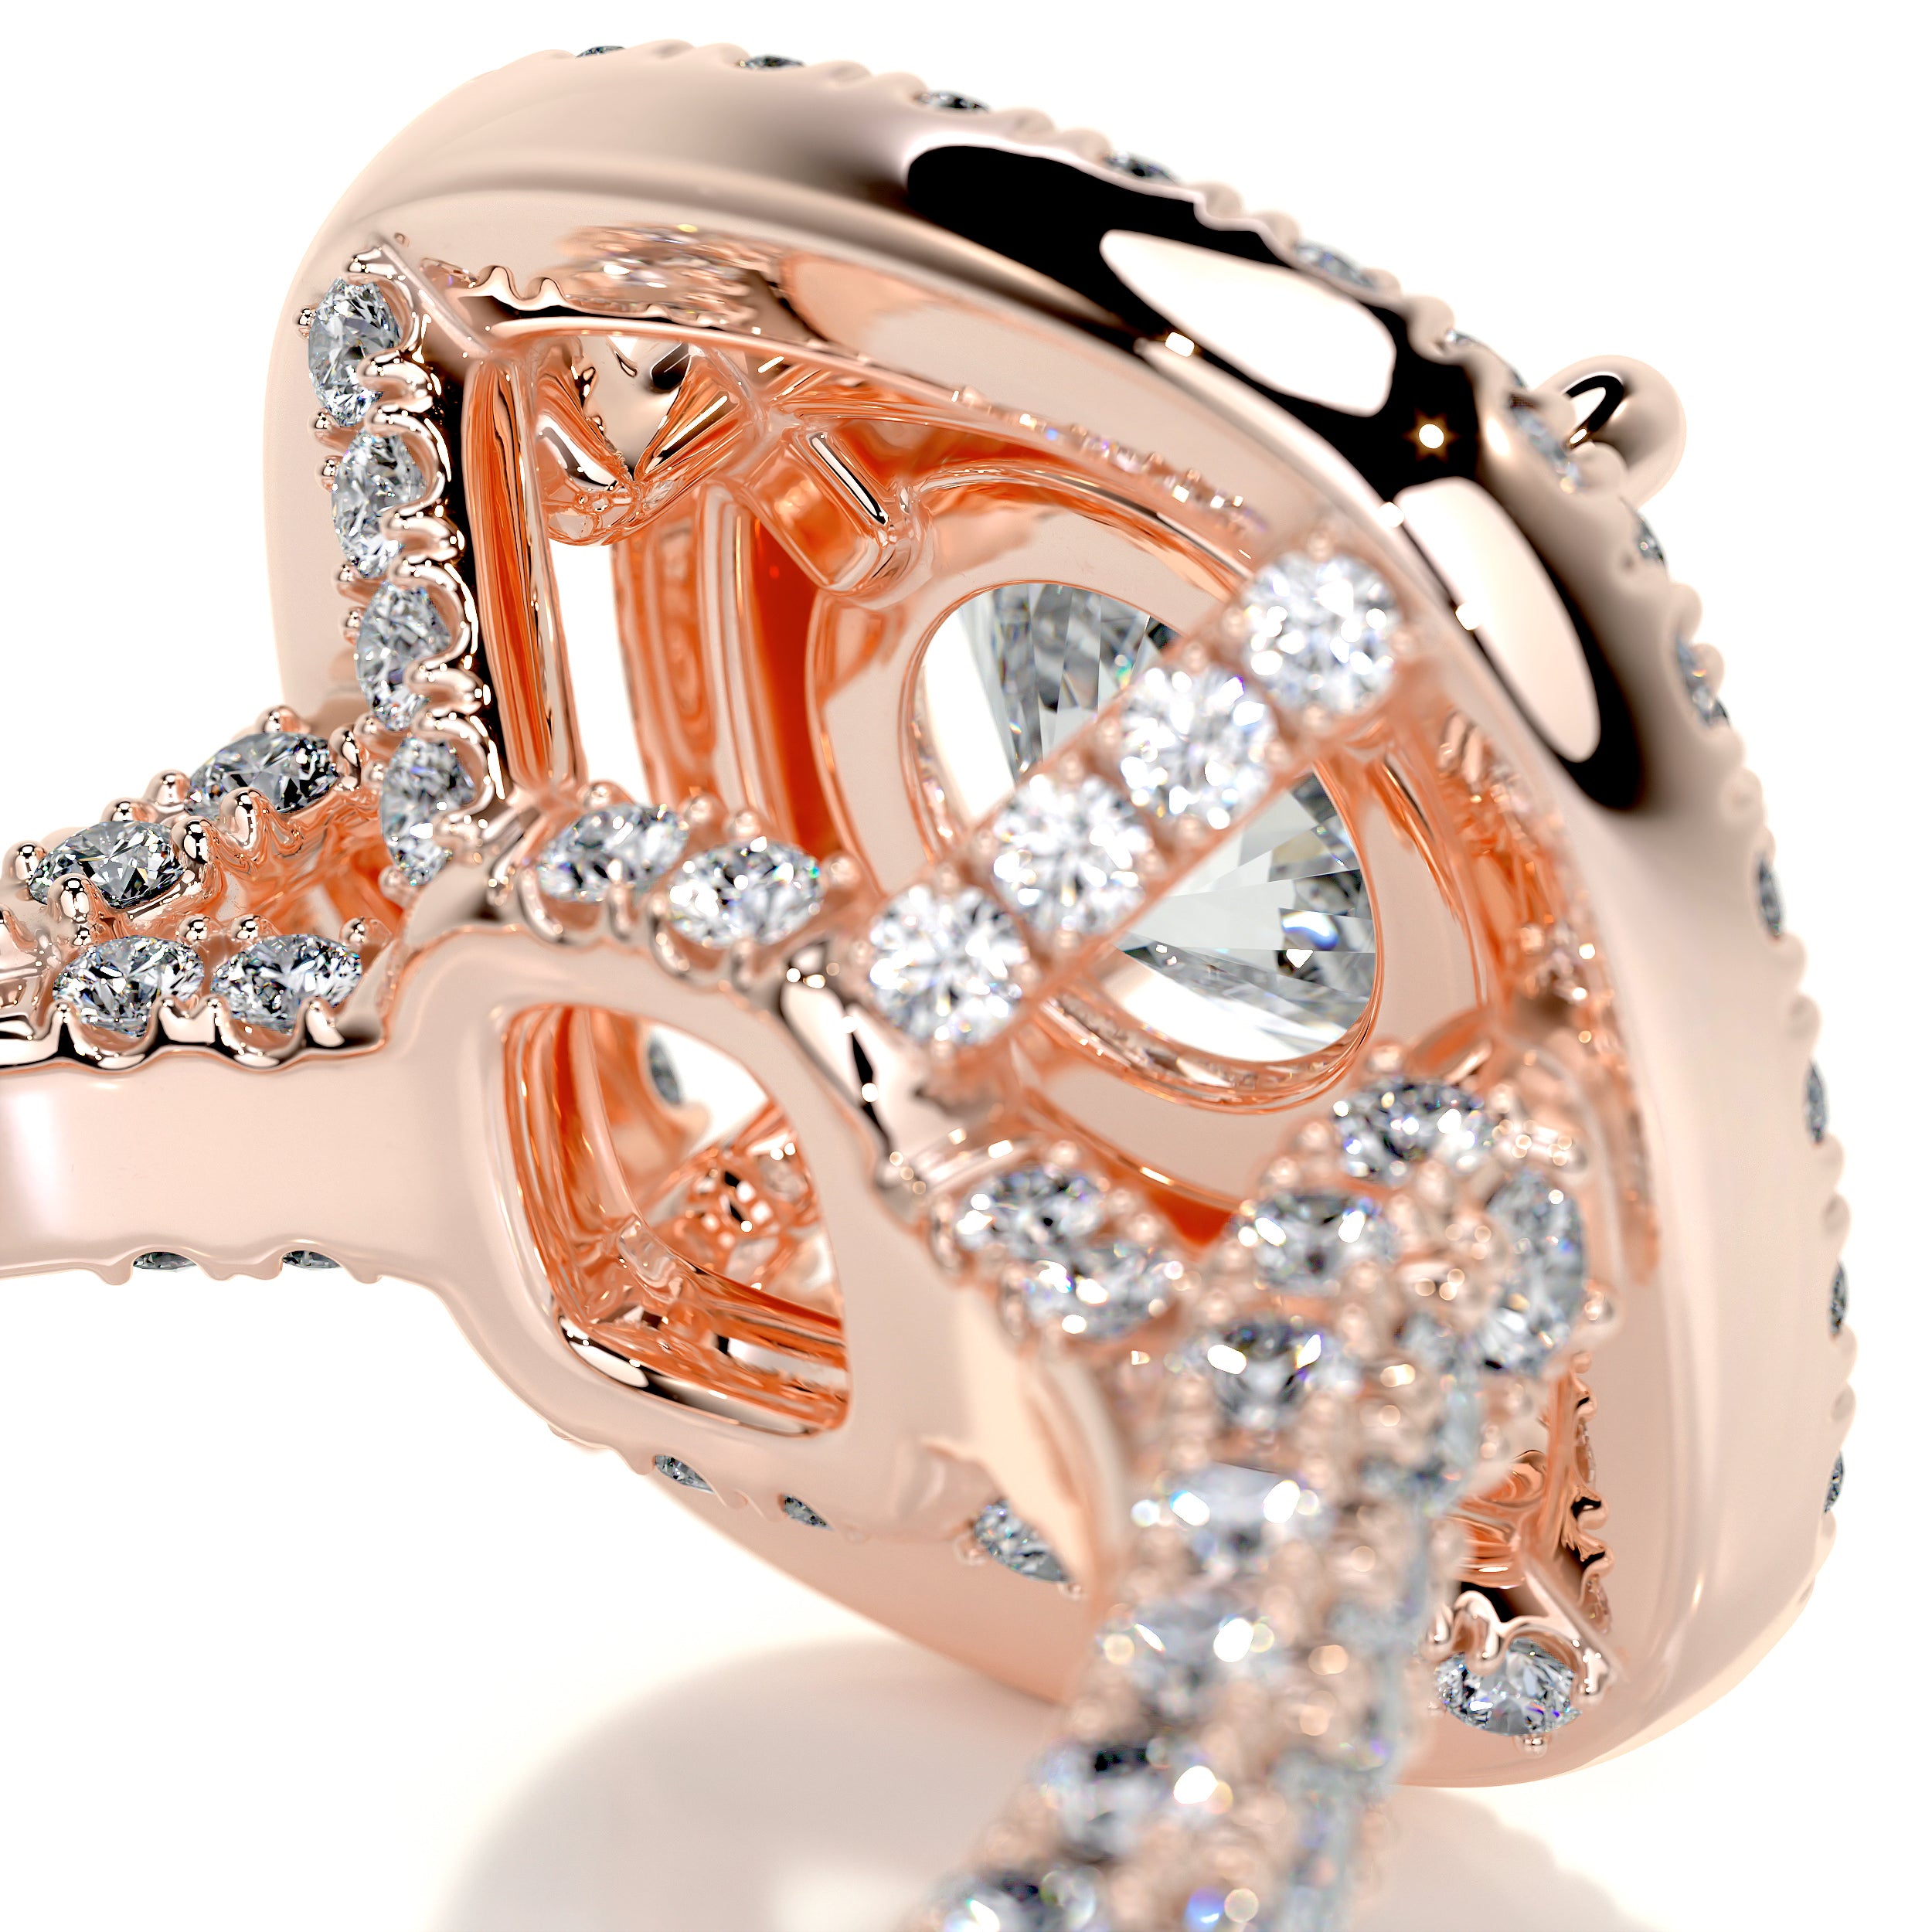 Carmen Diamond Engagement Ring -14K Rose Gold